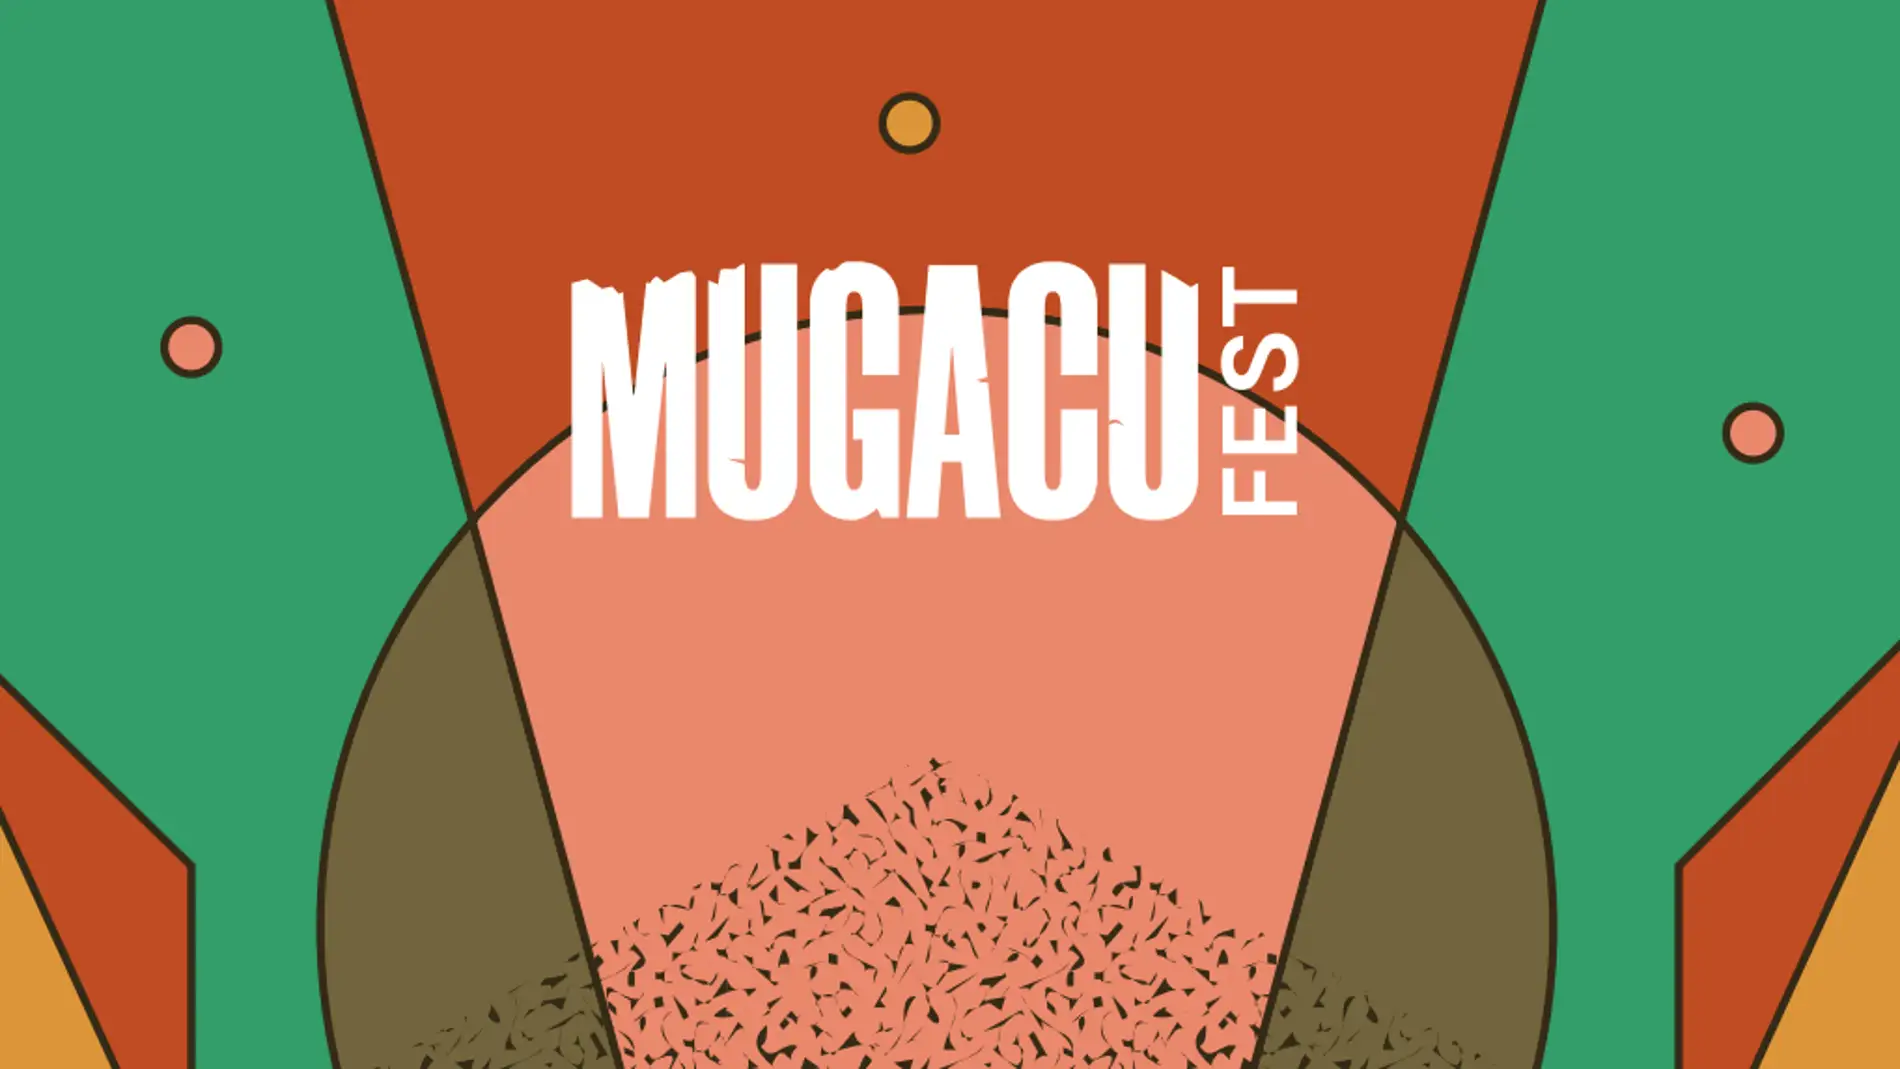 El MUGACU Fest llegará a la ciudad de Viana los días 24, 25 y 26 de junio. Además de contar con un cartel donde se encuentran los grandes artistas del panorama indie, el evento llega cargado de novedades 